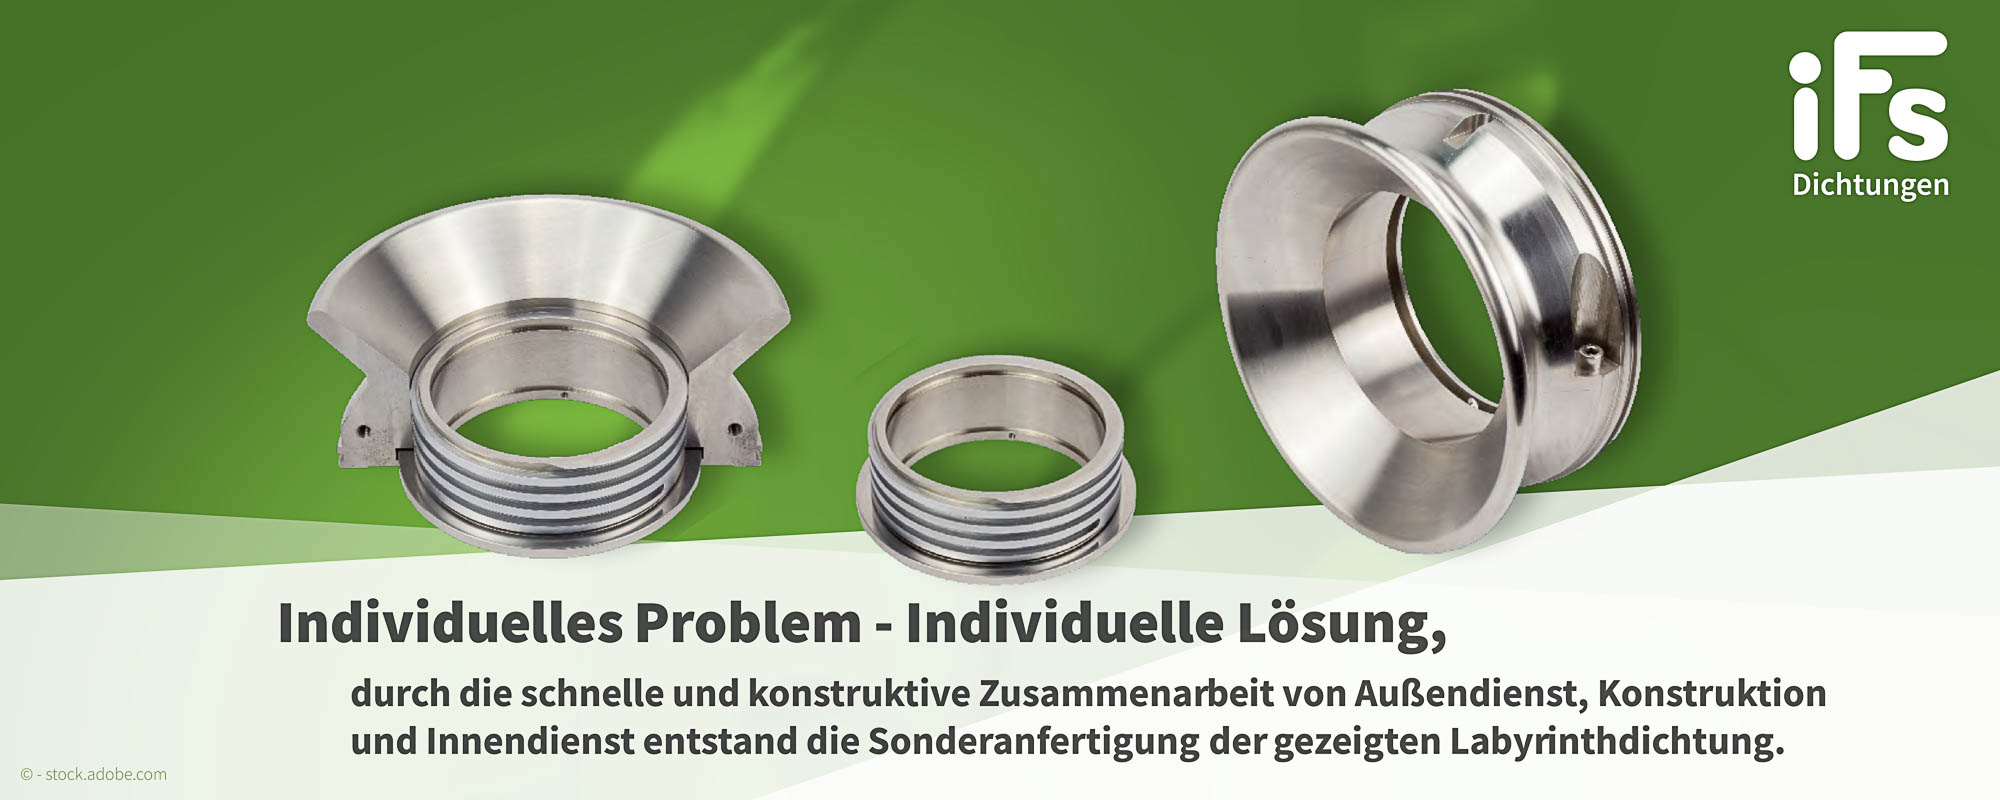 Industrietechnik Frank Schneider GmbH - Individuelle Lösungen